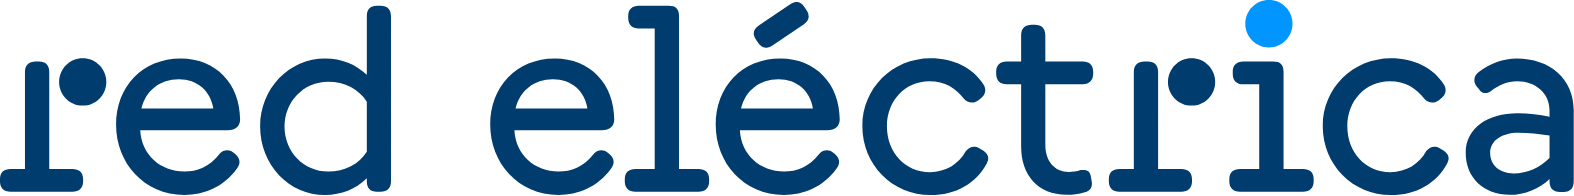 Red Eléctrica logo large (transparent PNG)